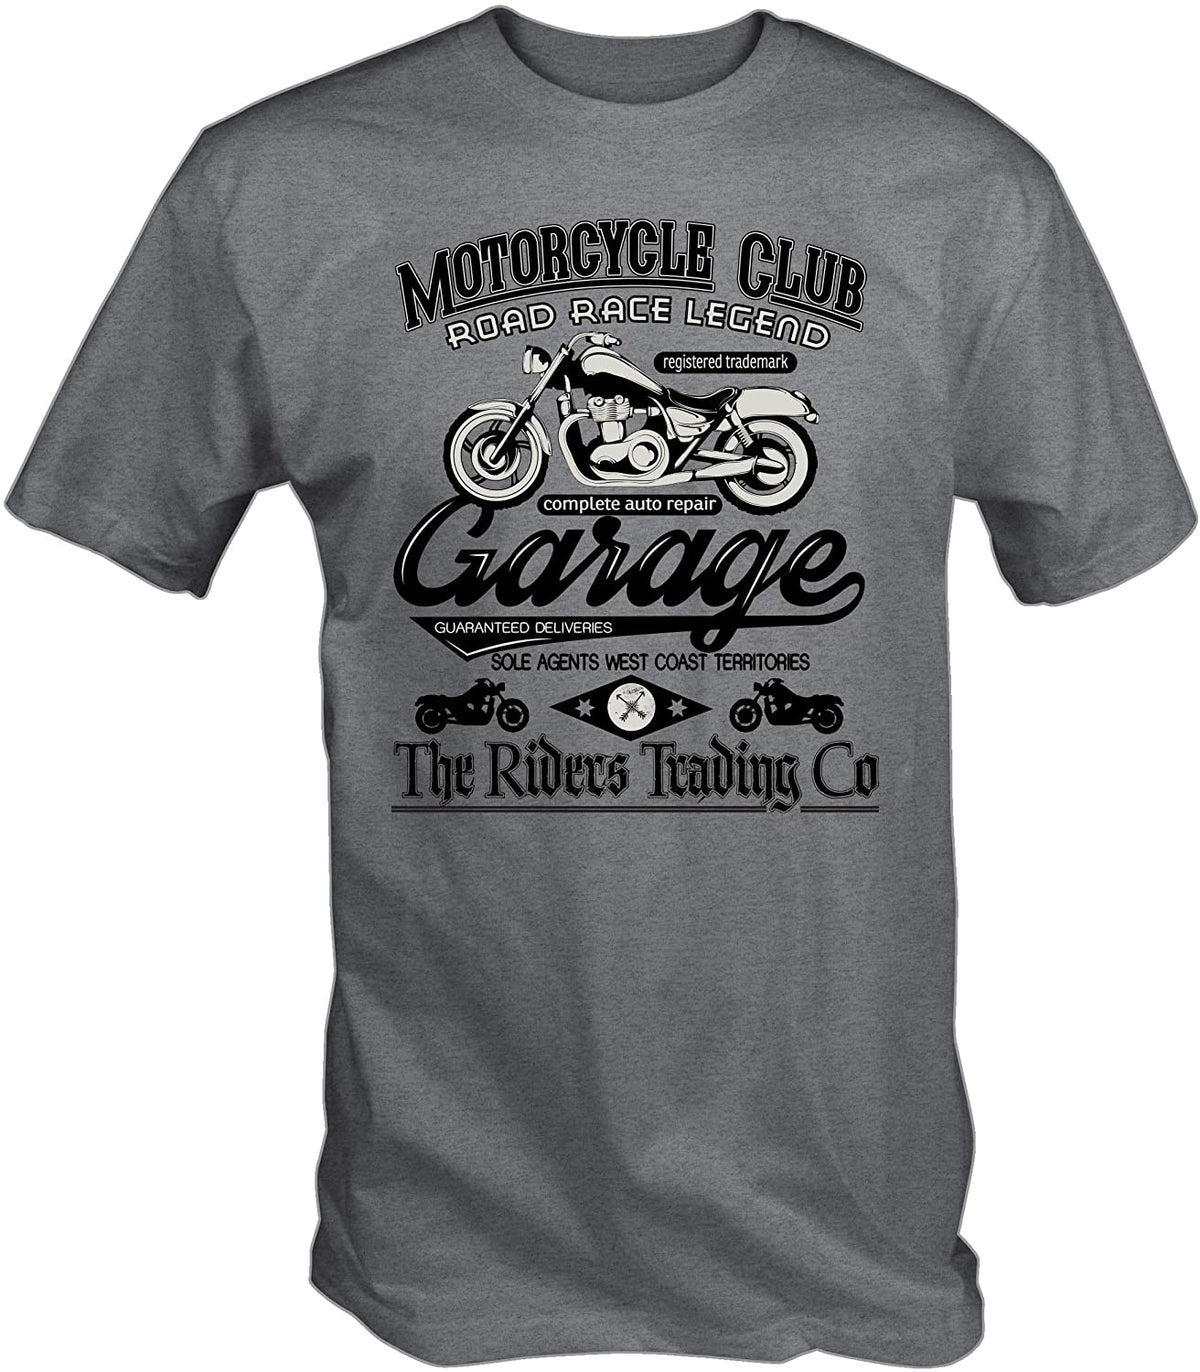 Motorcycle Club T Shirt Motorcycle Gear Cool Vintage Mens Tops T Shirt Harajuku Father Clothing Shirt